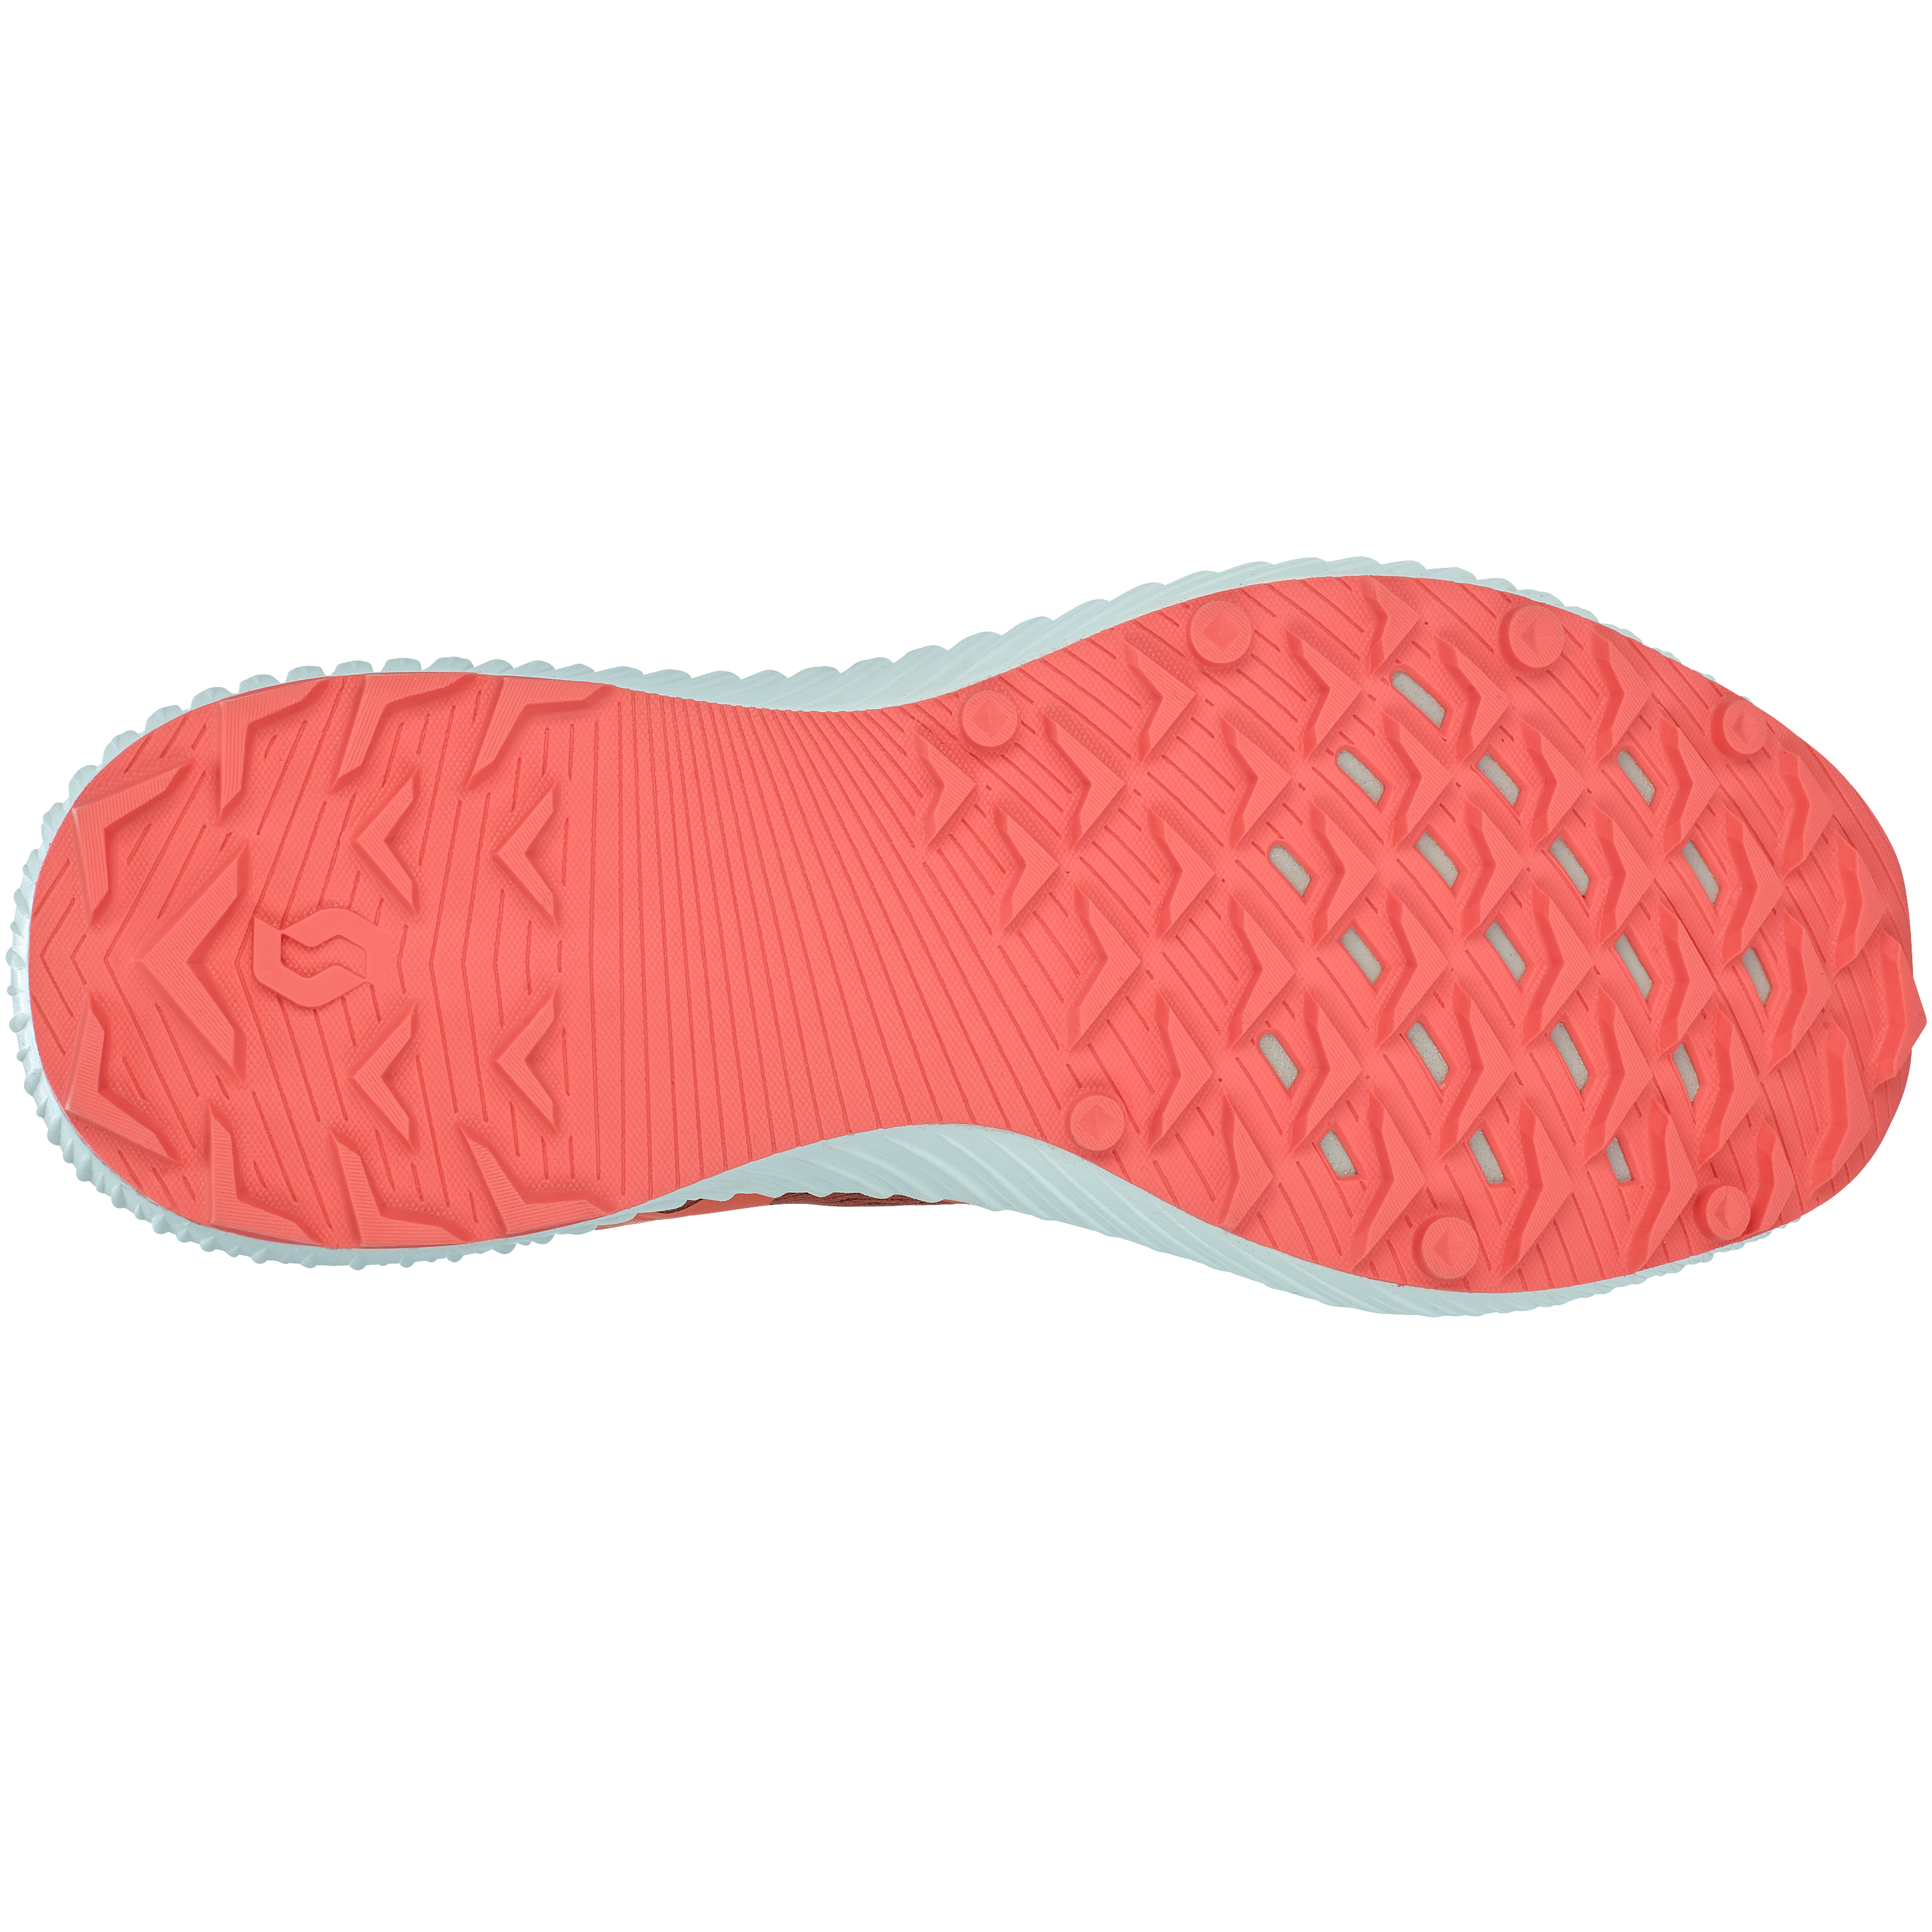 Scott Kinabalu Ultra RC Womens Trail Running Shoe